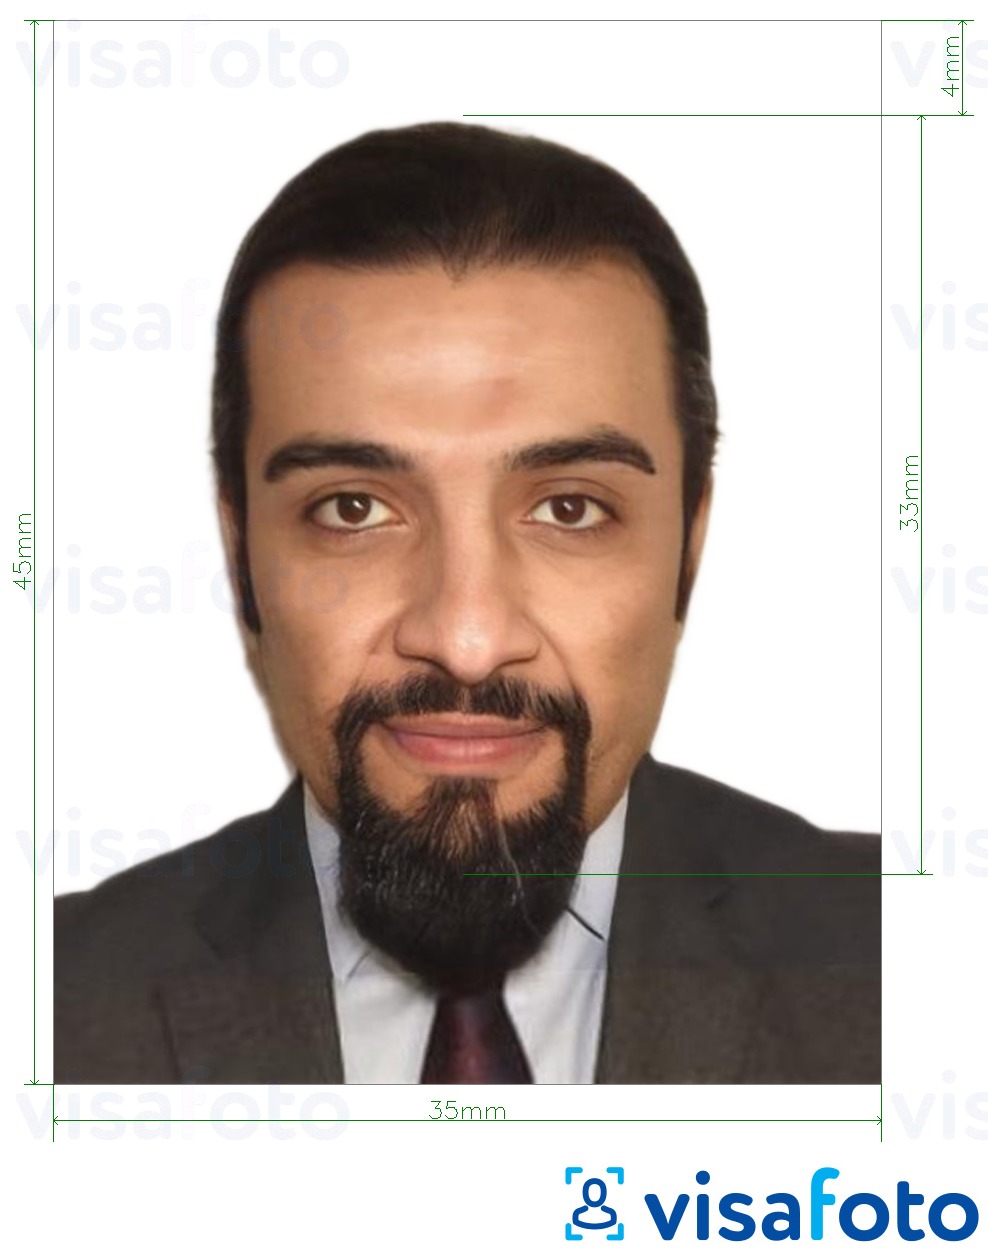 Приклад фотографії для Йорданський паспорт 3,5х4,5 см (35х45 мм) з точними специфікаціями розміру